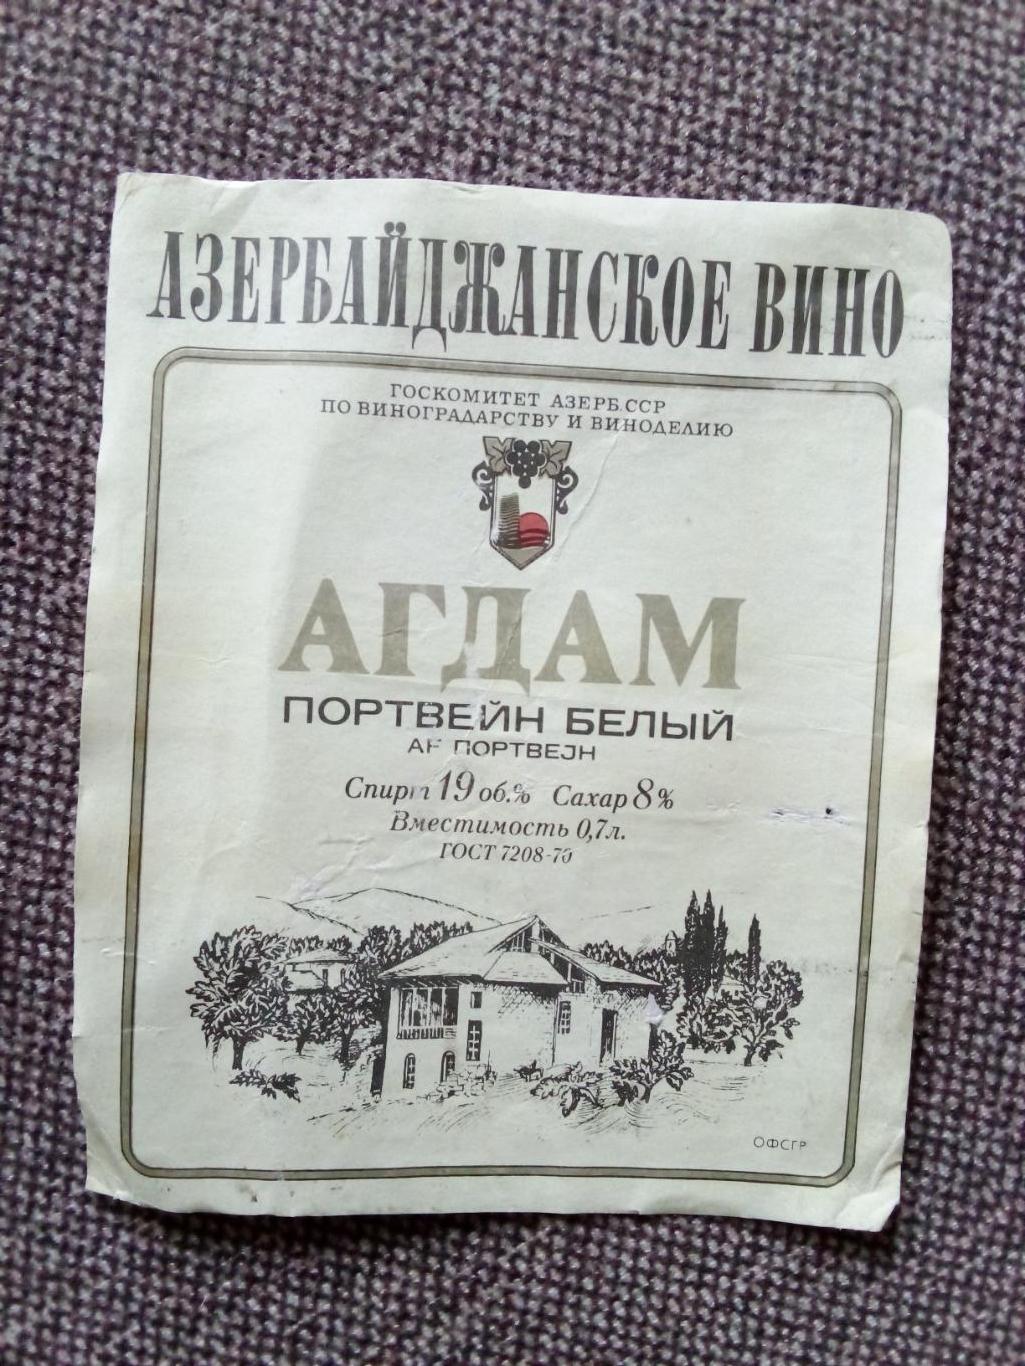 Винные этикетки : Агдам Азербайджанское вино Портвейн (алкоголь)